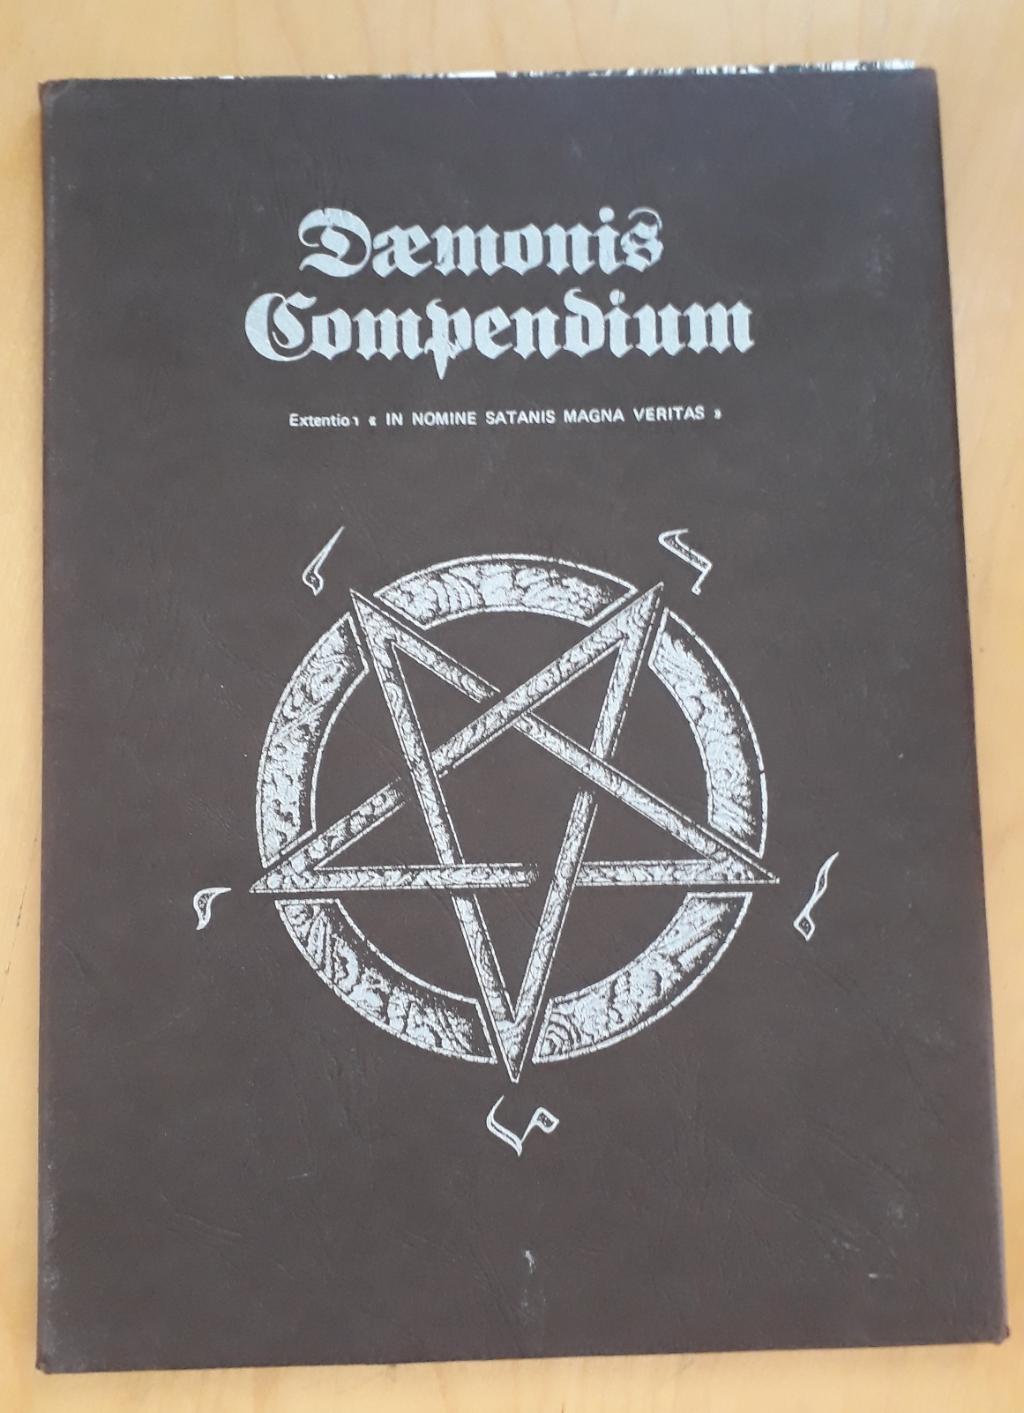 In Nomine Satanis - Daemonis Compedium